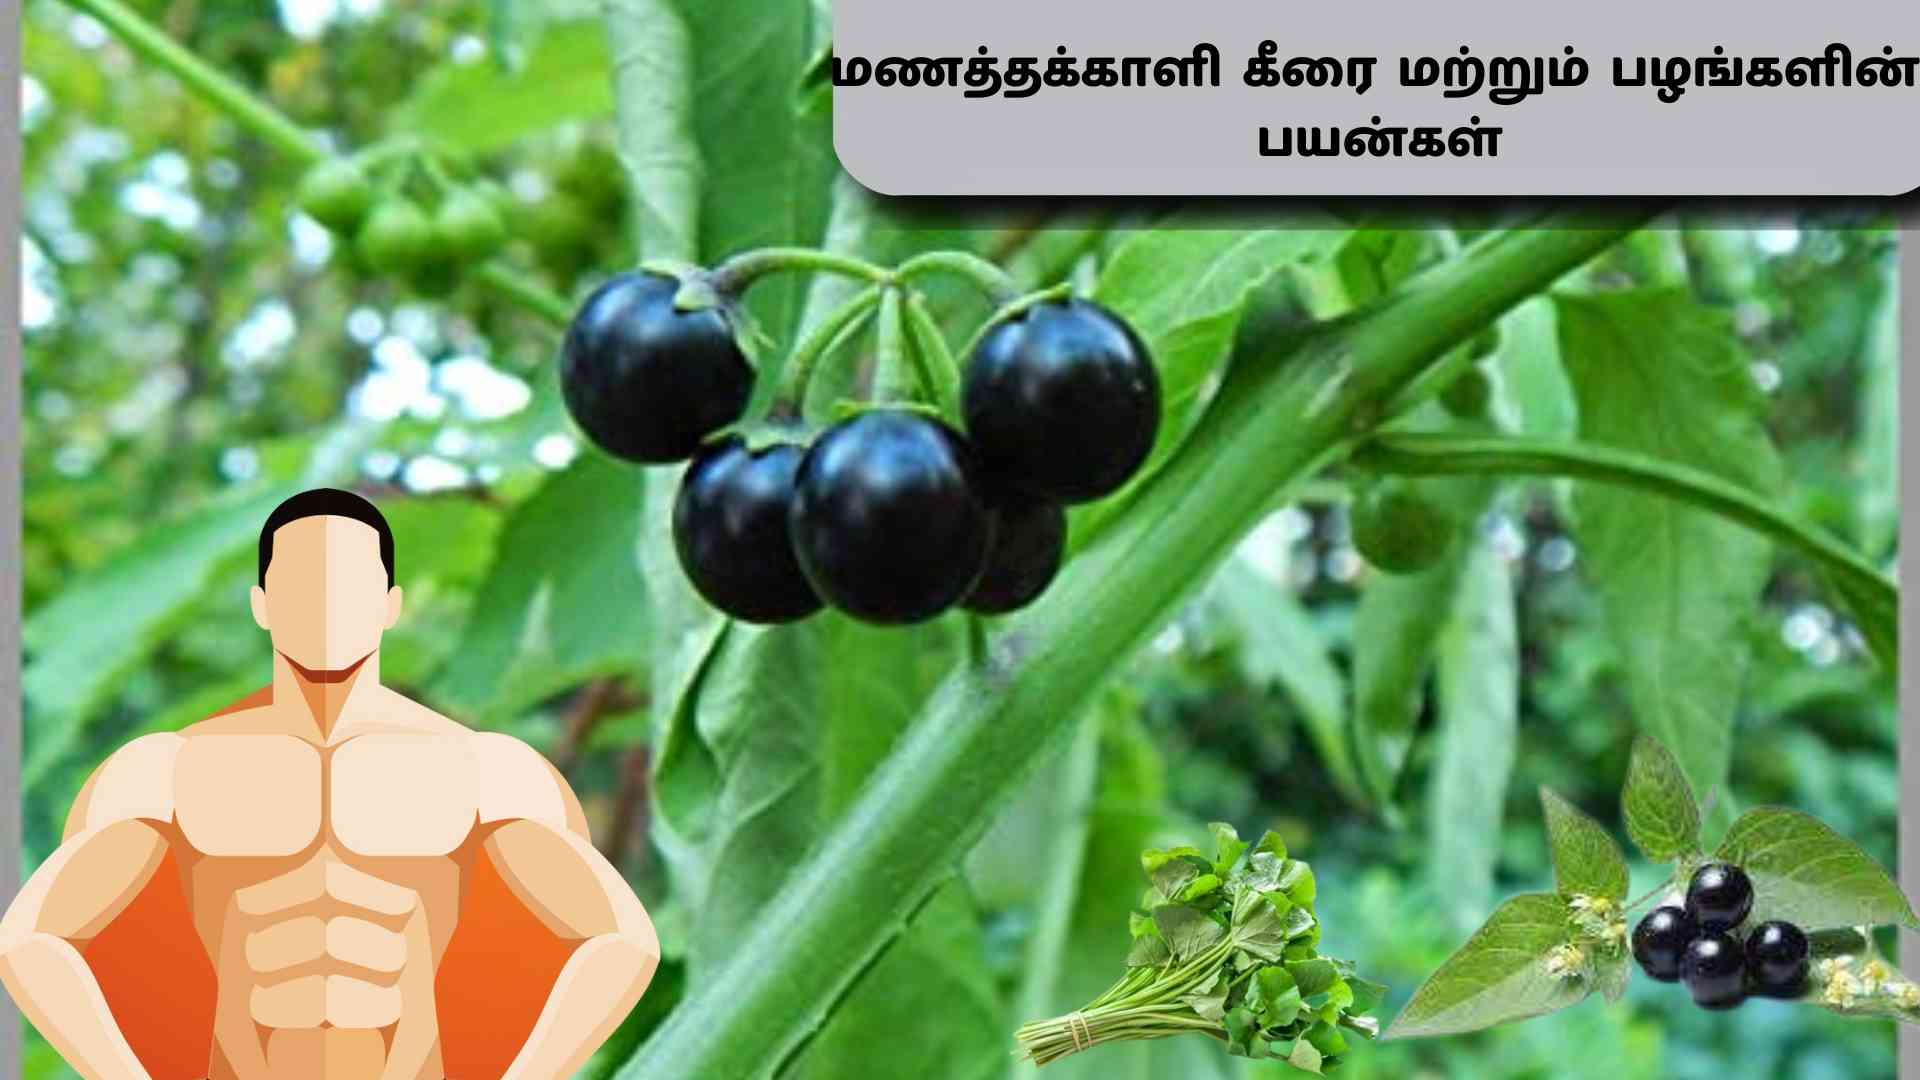 மணத்தக்காளி பழங்கள் மற்றும் மணத்தக்காளி கீரையின் பயன்கள் | Manathakkali And Manathakkali Keerai Benefits - Platform Tamil